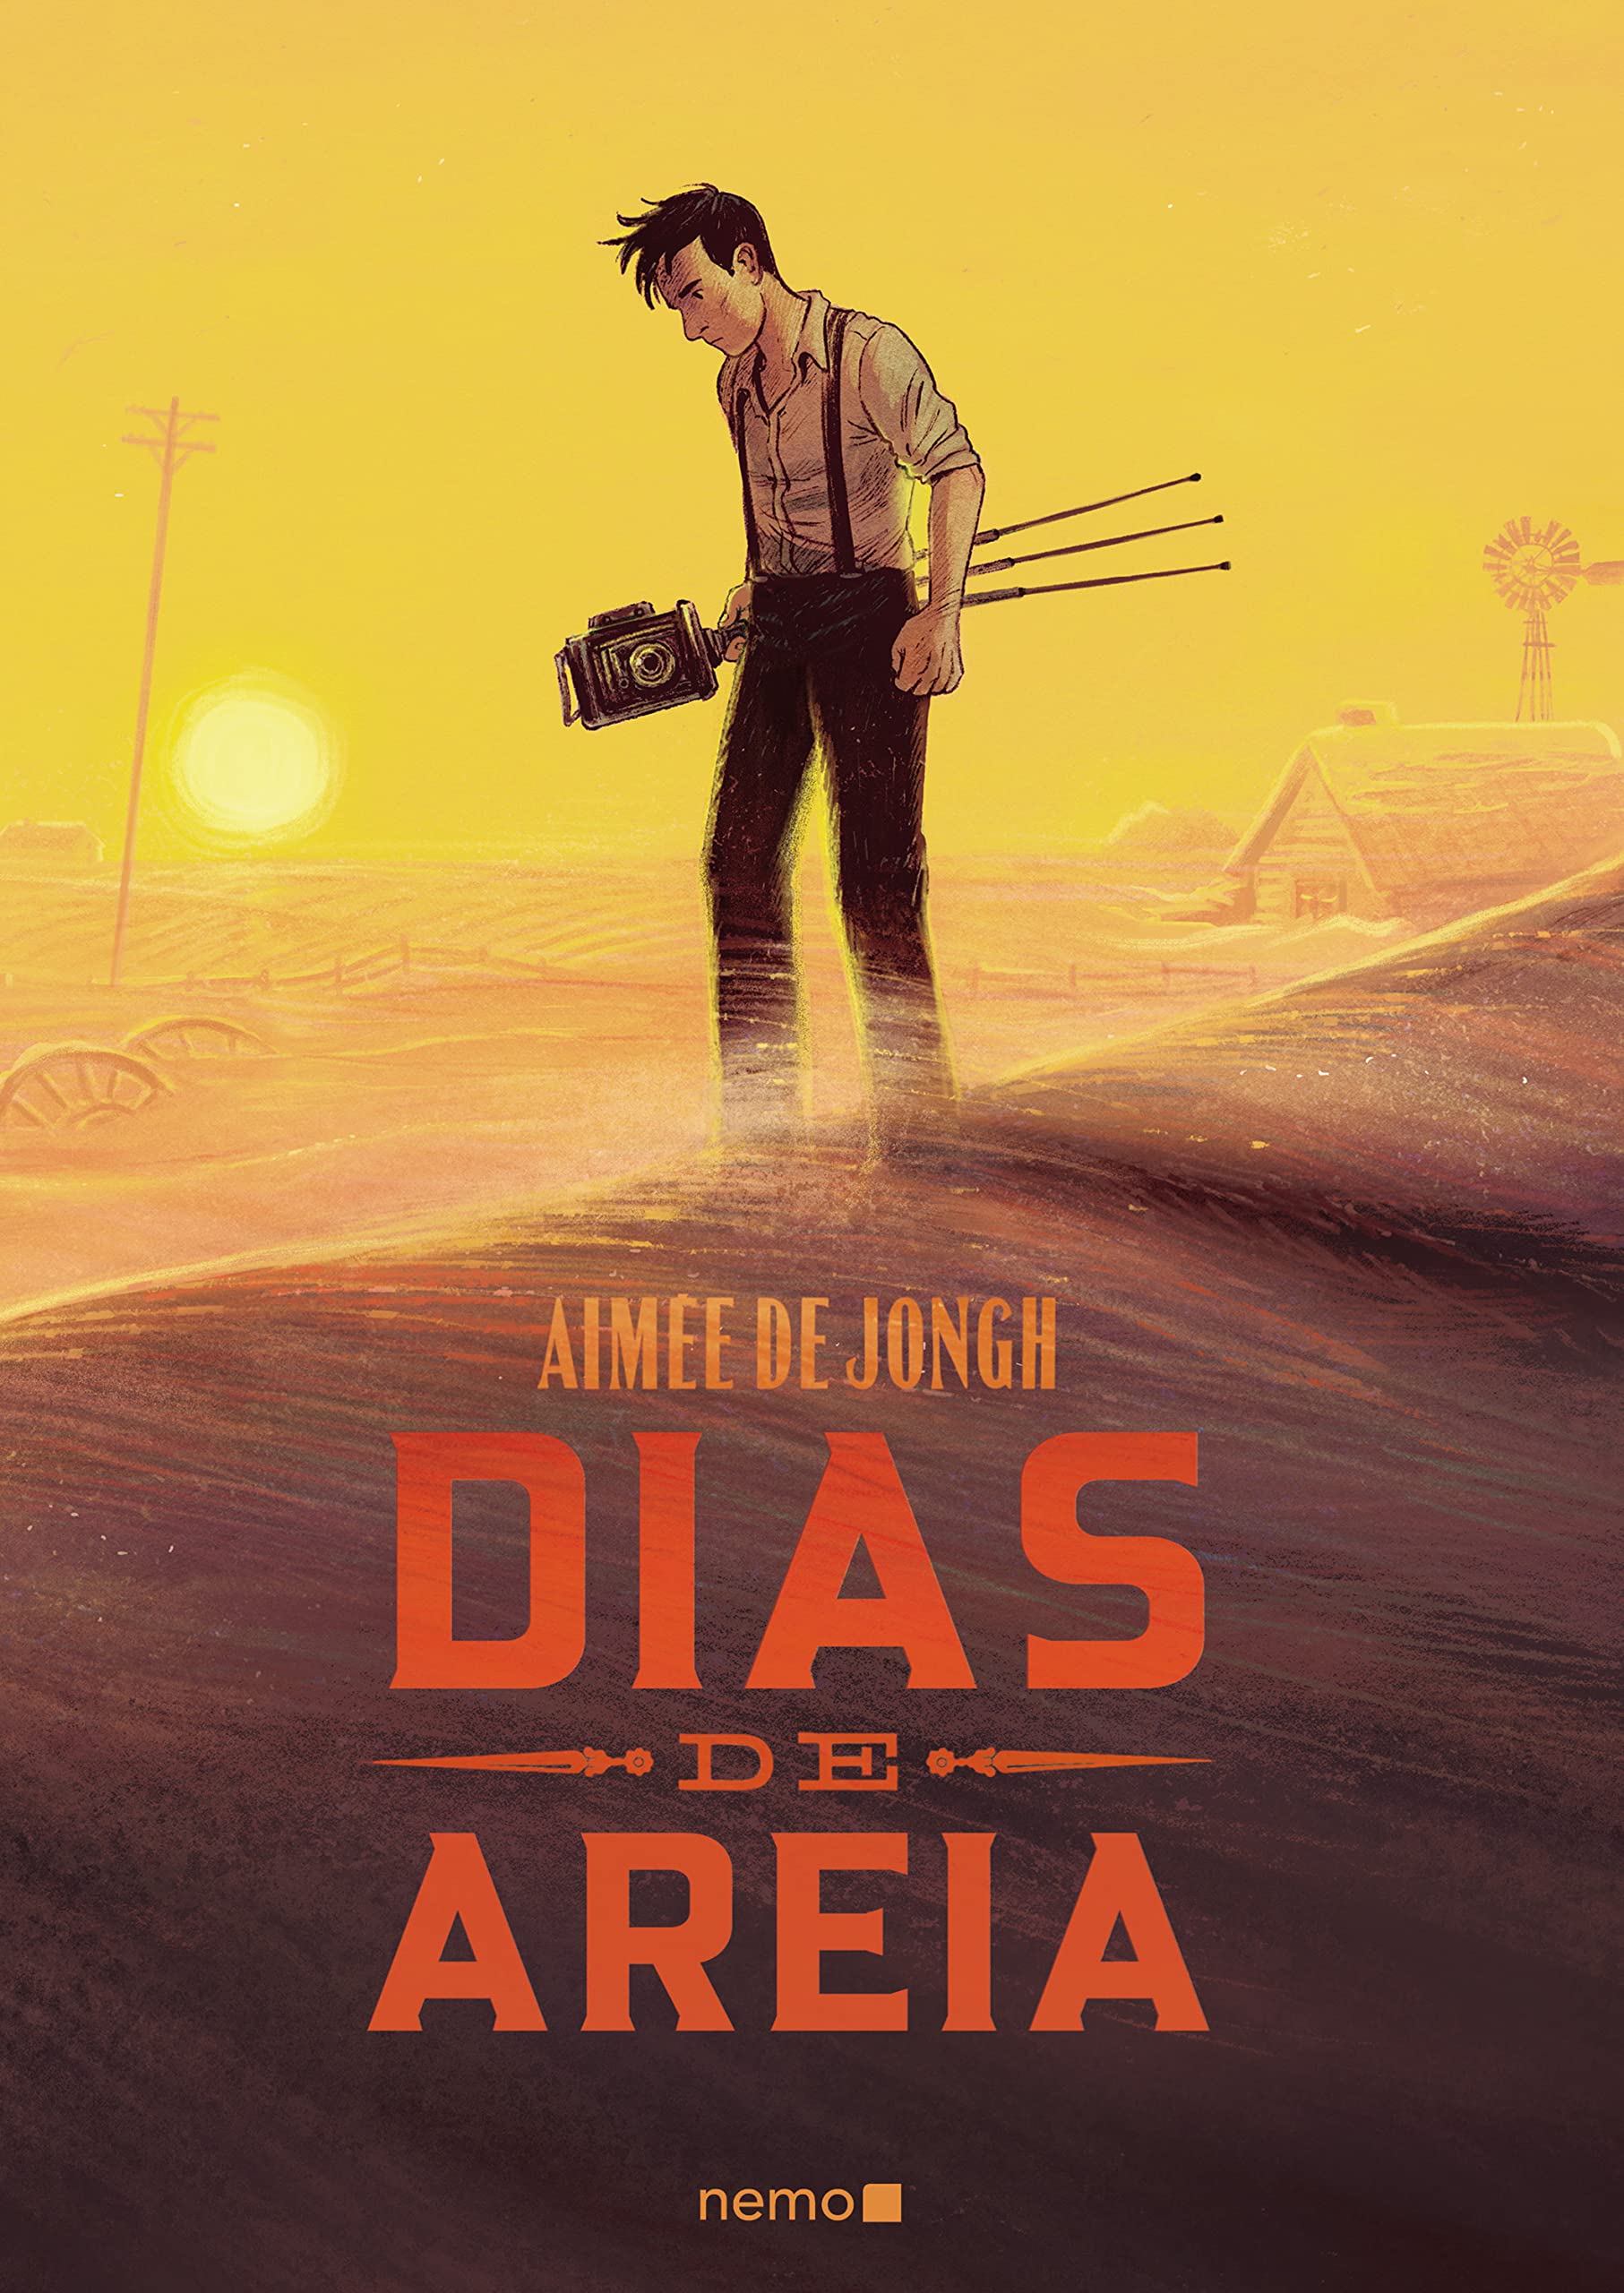 Dias de areia (Portuguese Edition)